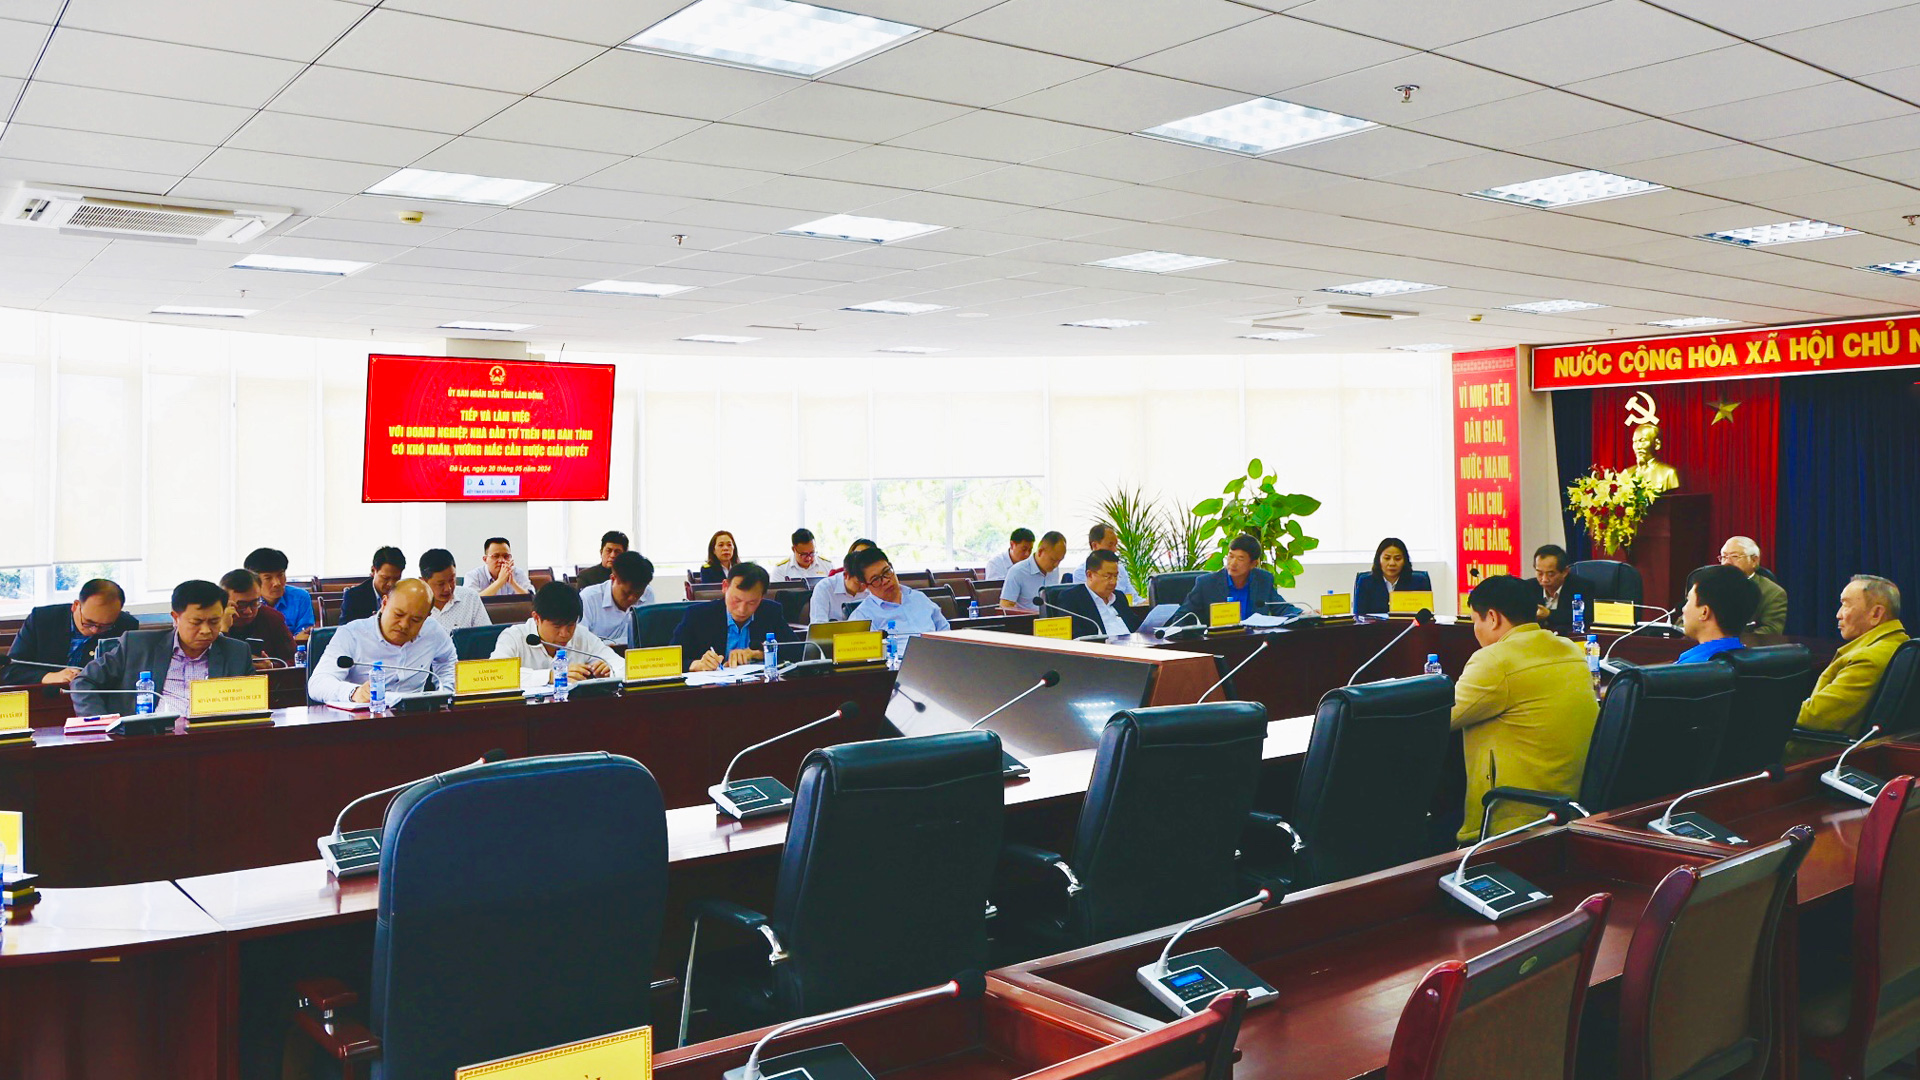 Ban Giám đốc HTX Du thuyền Hồ Tuyền Lâm kiến nghị tạo điều kiện để được tiếp tục hoạt động dịch vụ trên mặt nước hồ Tuyền Lâm